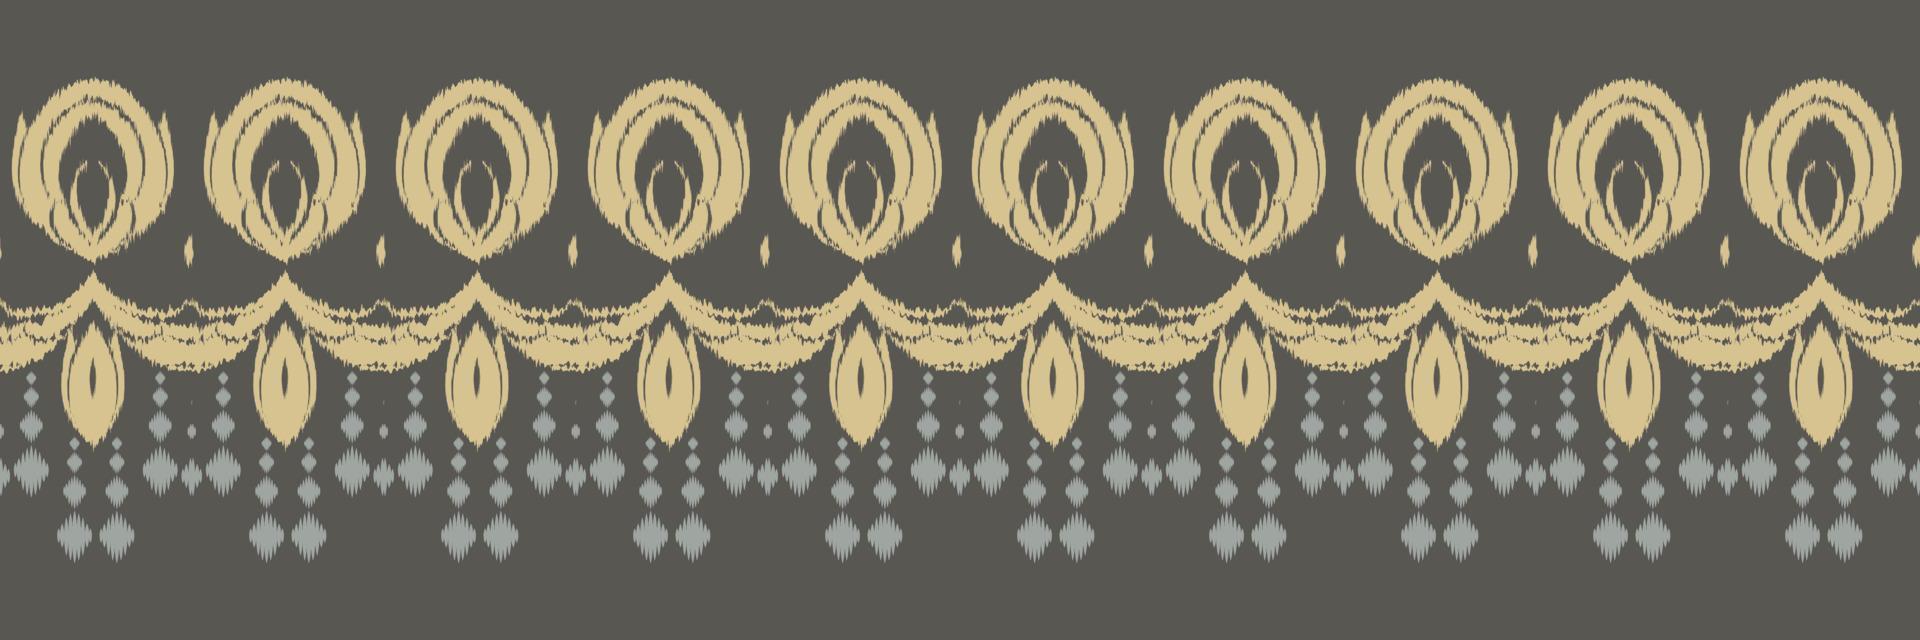 étnico ikat triángulo batik textil de patrones sin fisuras diseño vectorial digital para imprimir saree kurti borneo borde de tela símbolos de pincel muestras con estilo vector